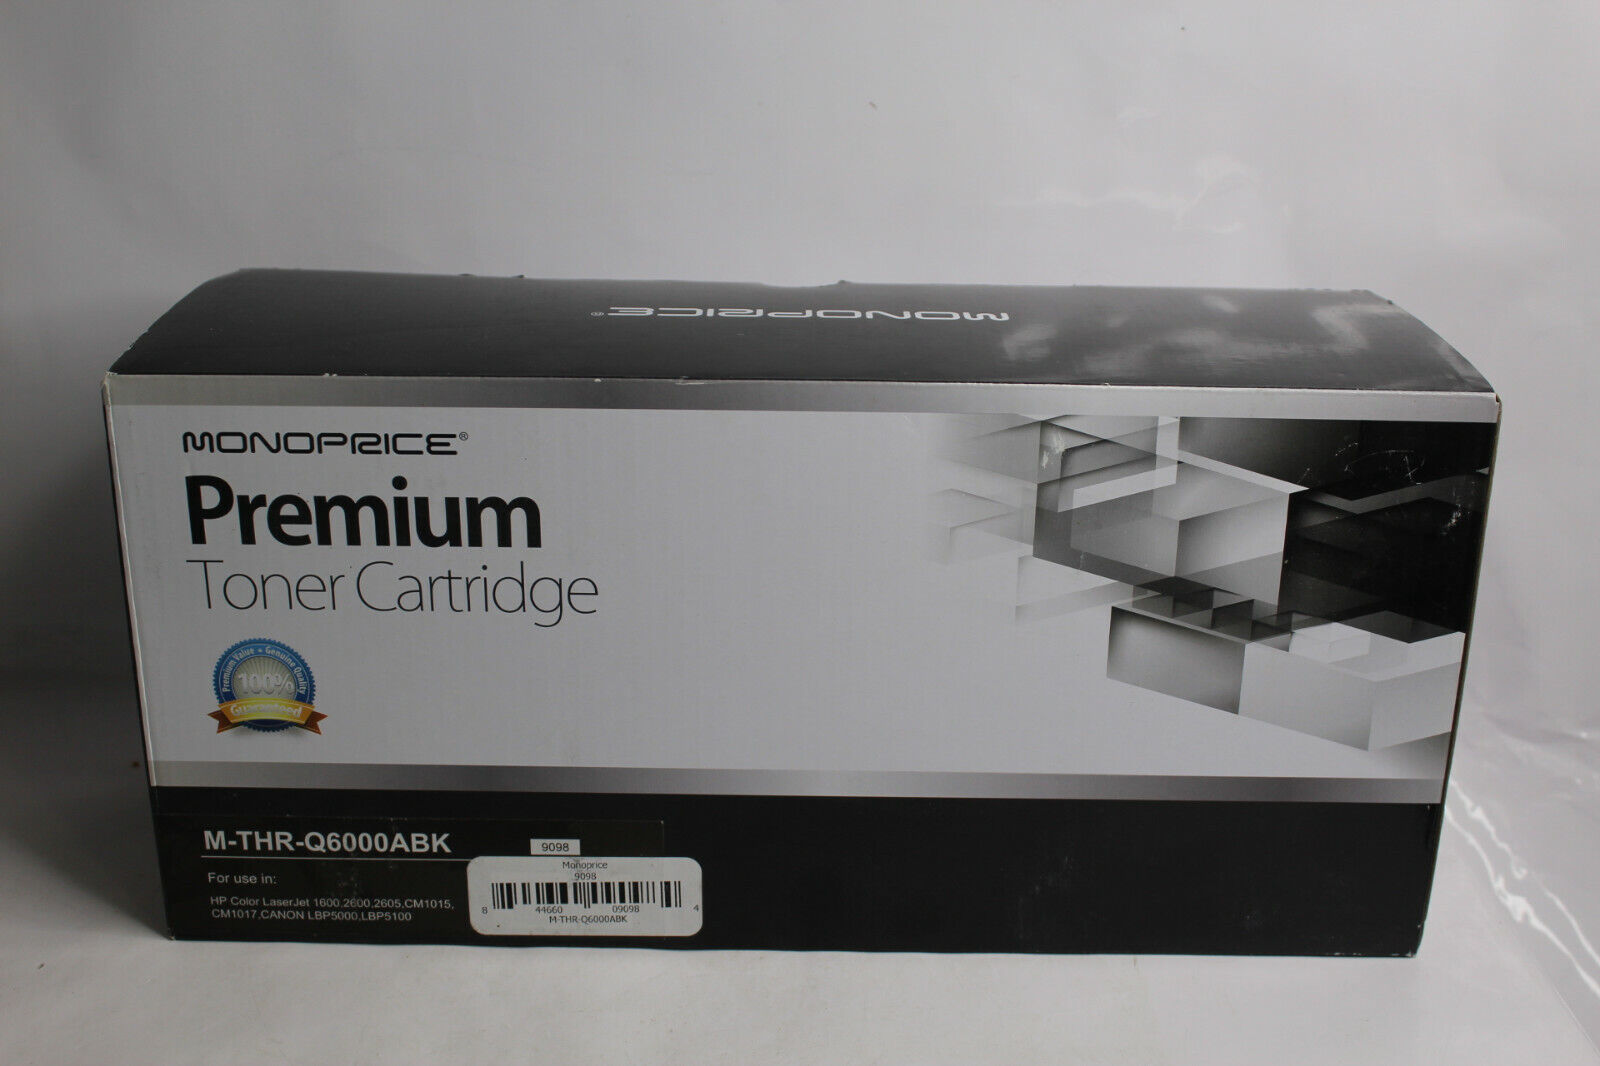 Monoprice Premium Toner Cartridge M-THR-Q6000ABK New 